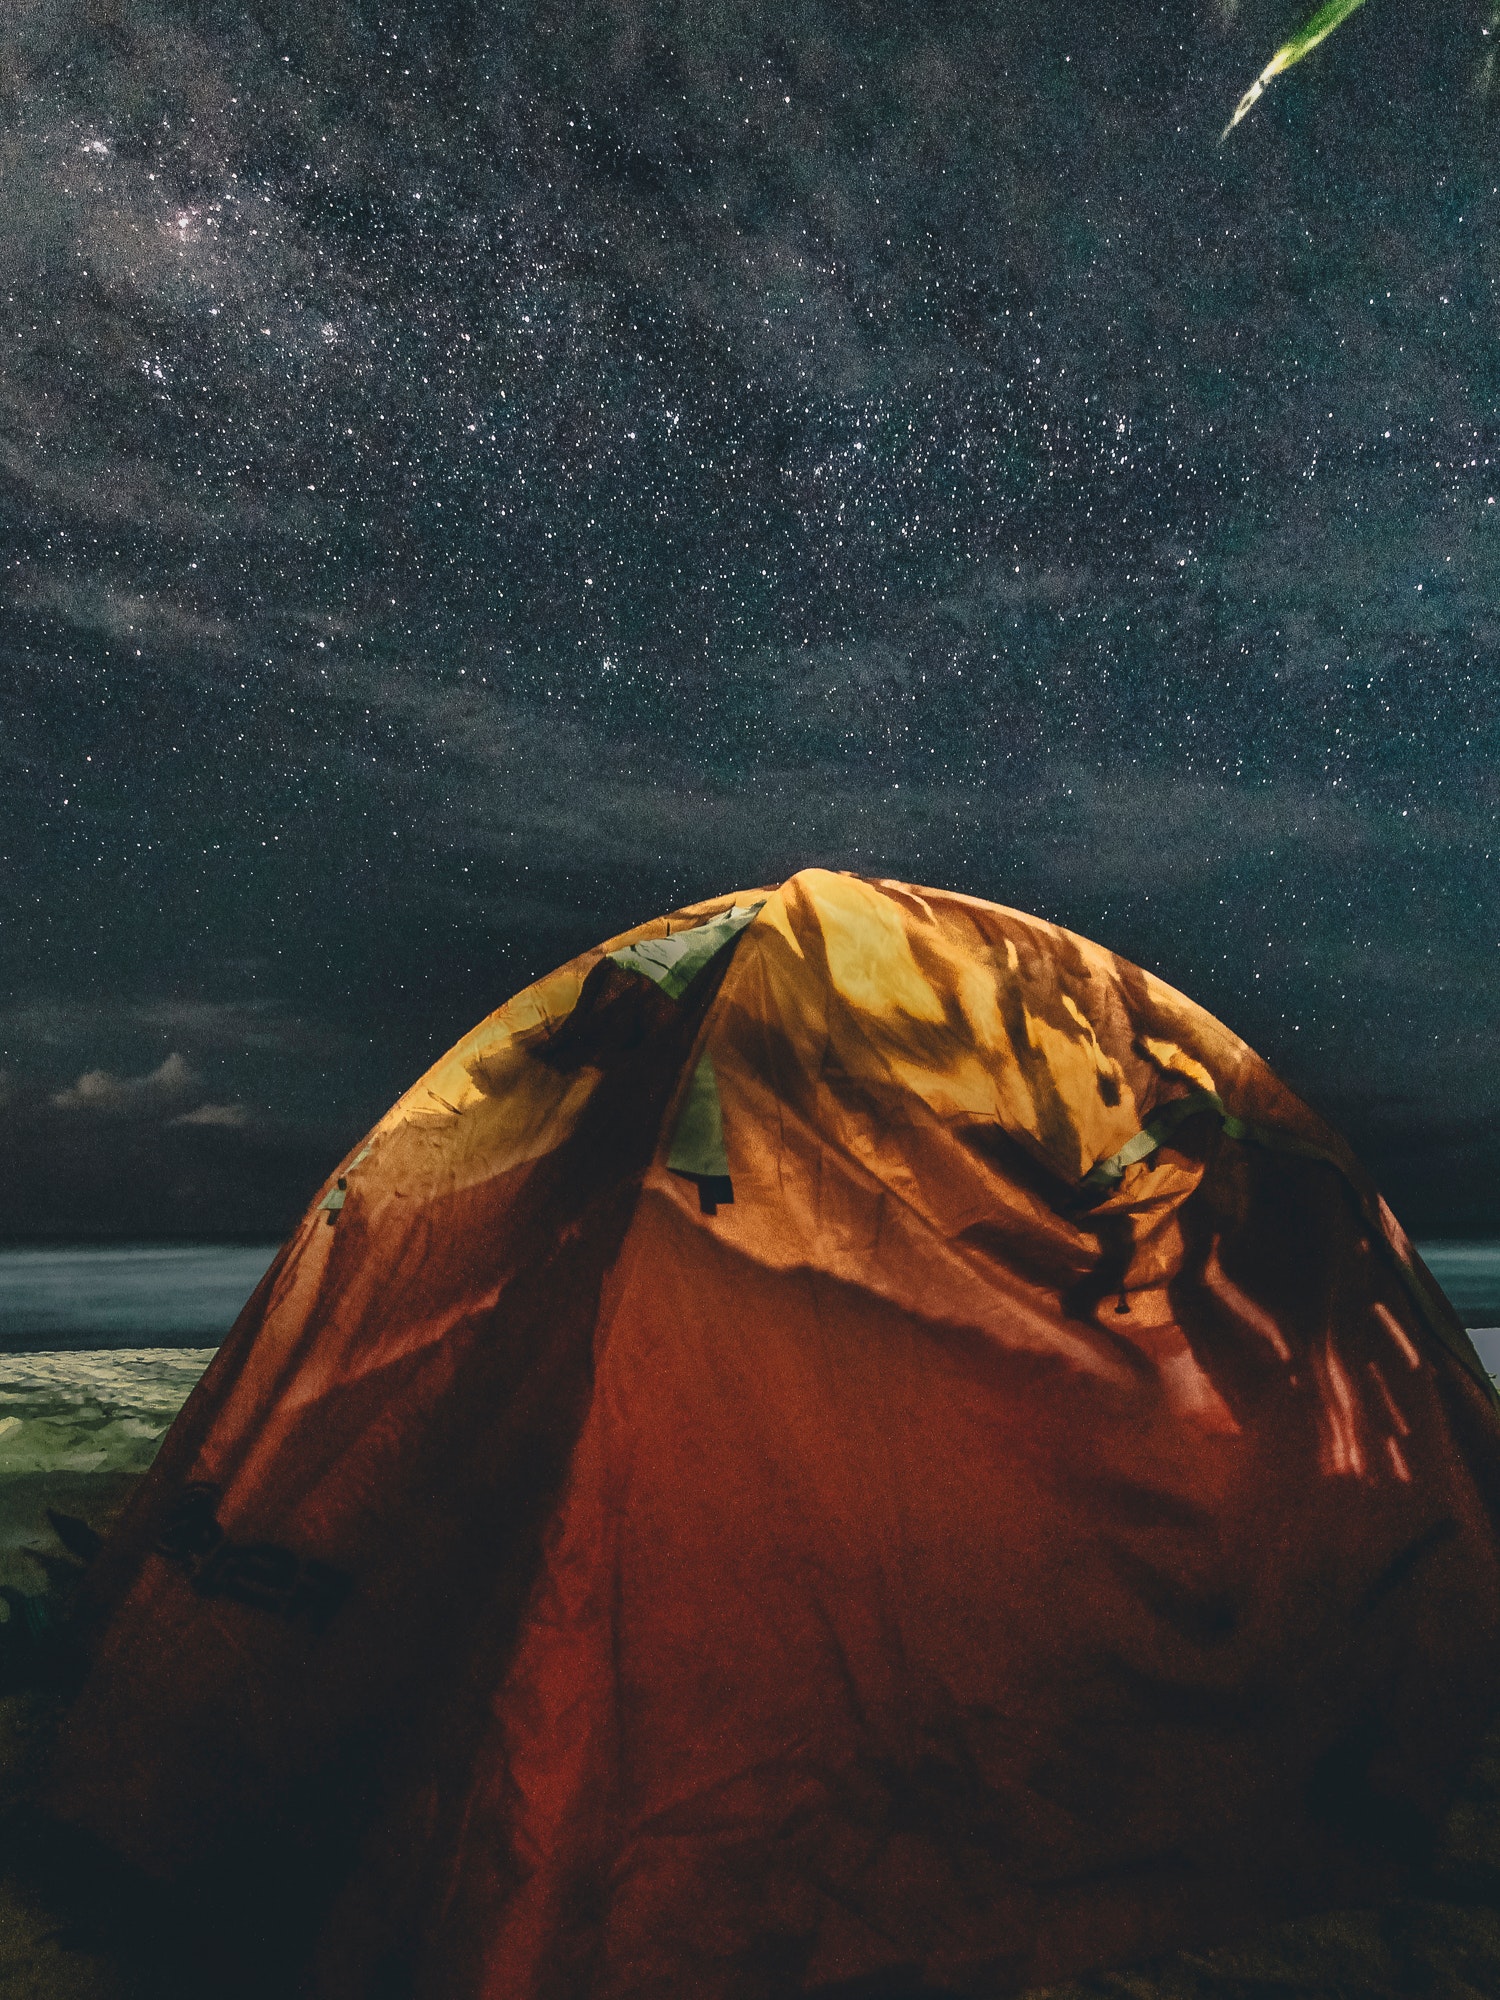 Camping Stargazing